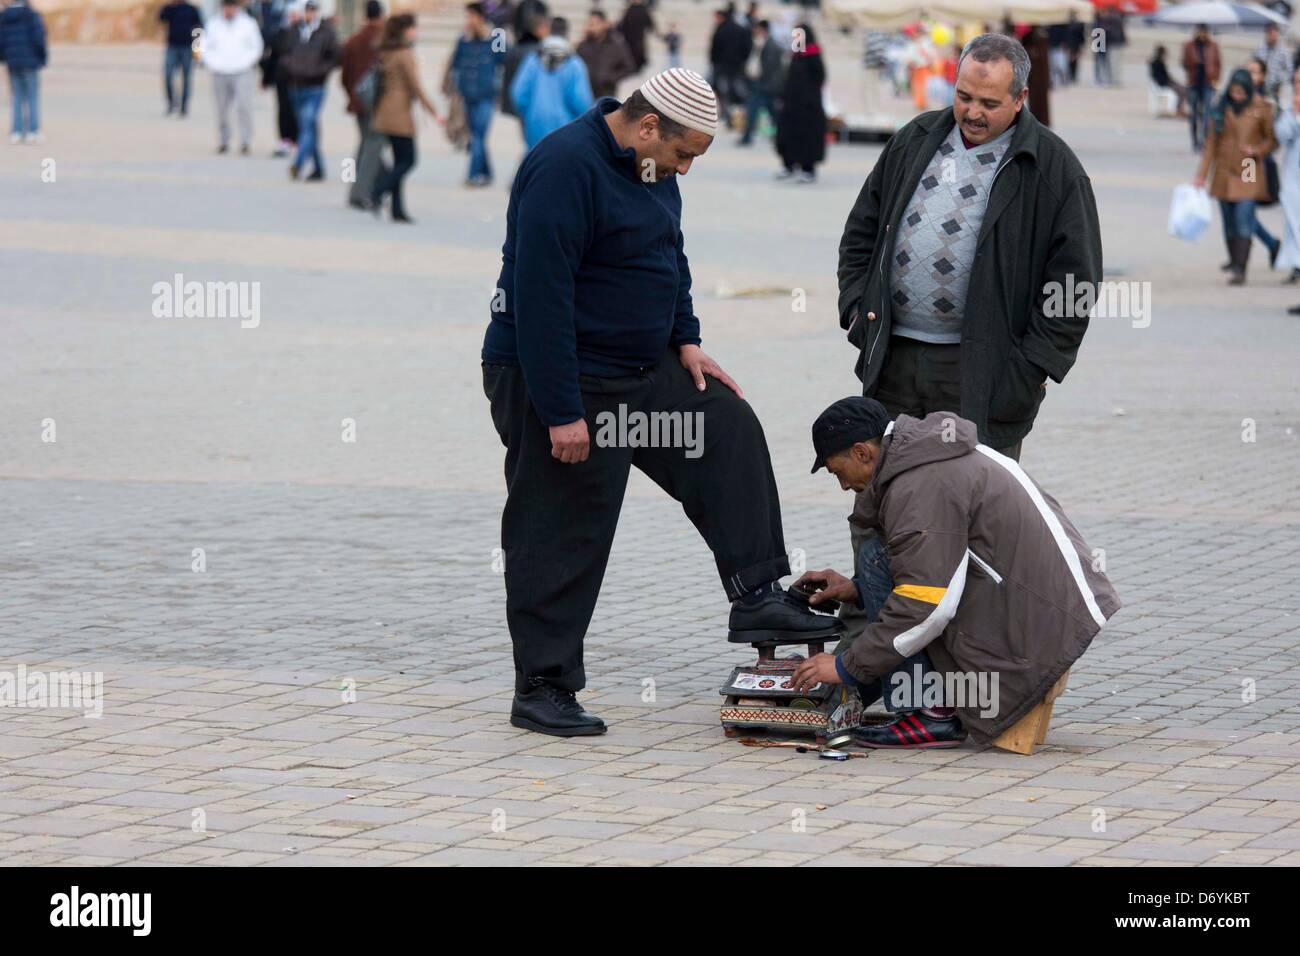 Schuhputzer bei der Arbeit auf dem Hauptplatz von Meknes, Marokko, foto: Robert B. Fishman, ecomedia, 26.2.2013 Foto Stock